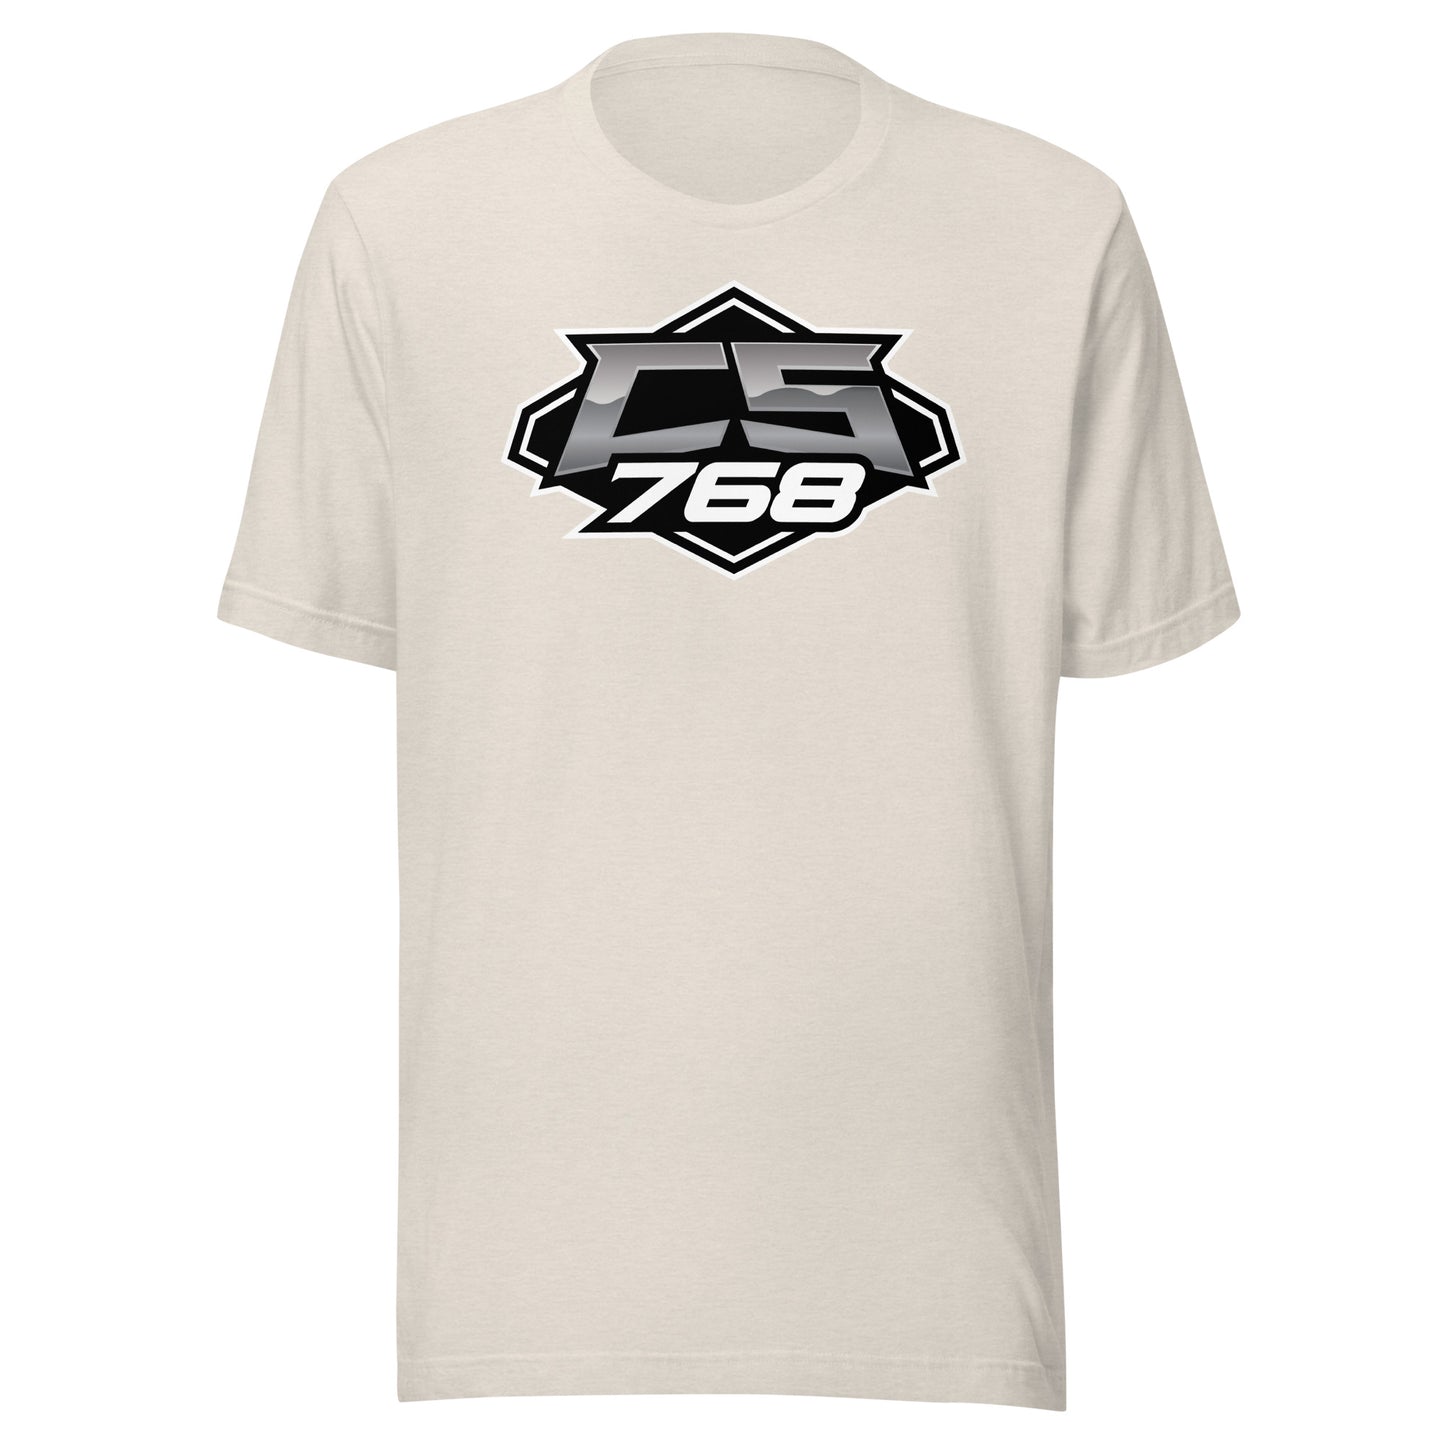 Cole Shondeck 768 T-Shirt